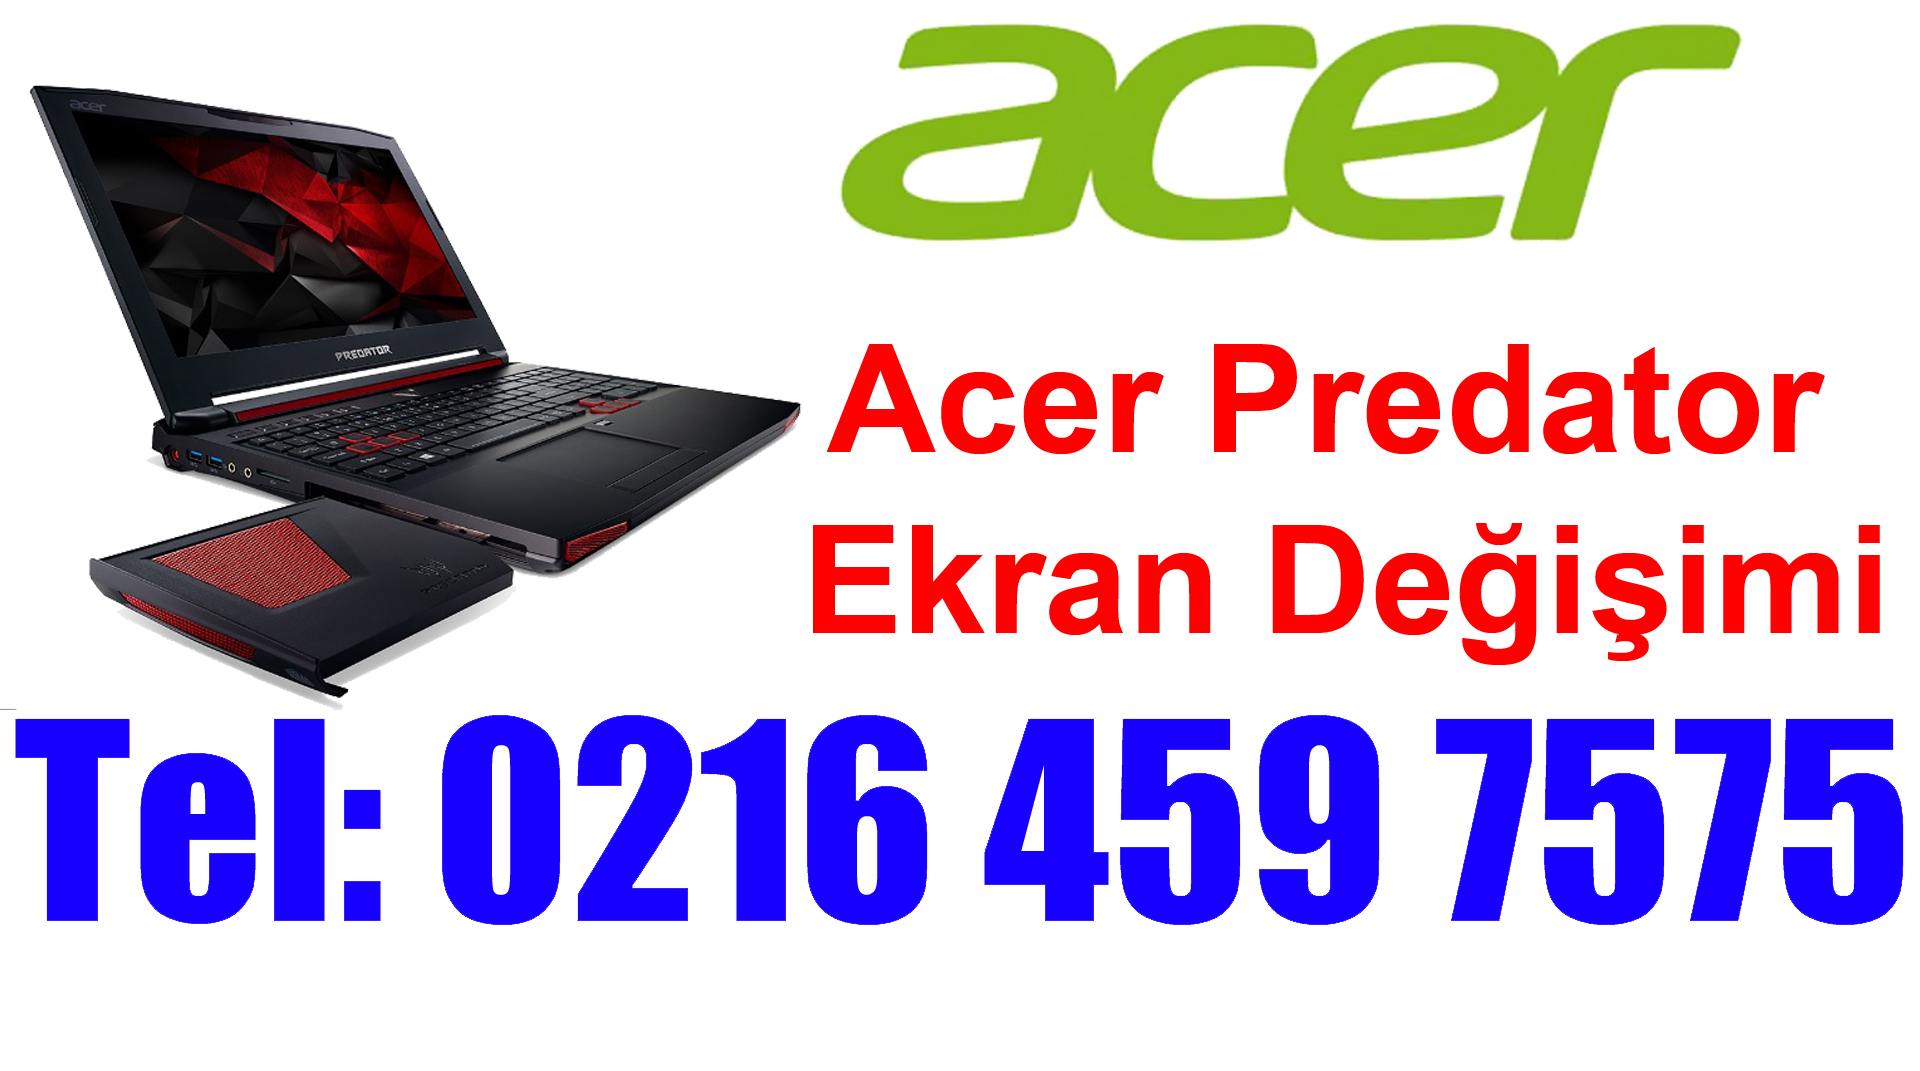 Acer Predator Ekran Değişimi